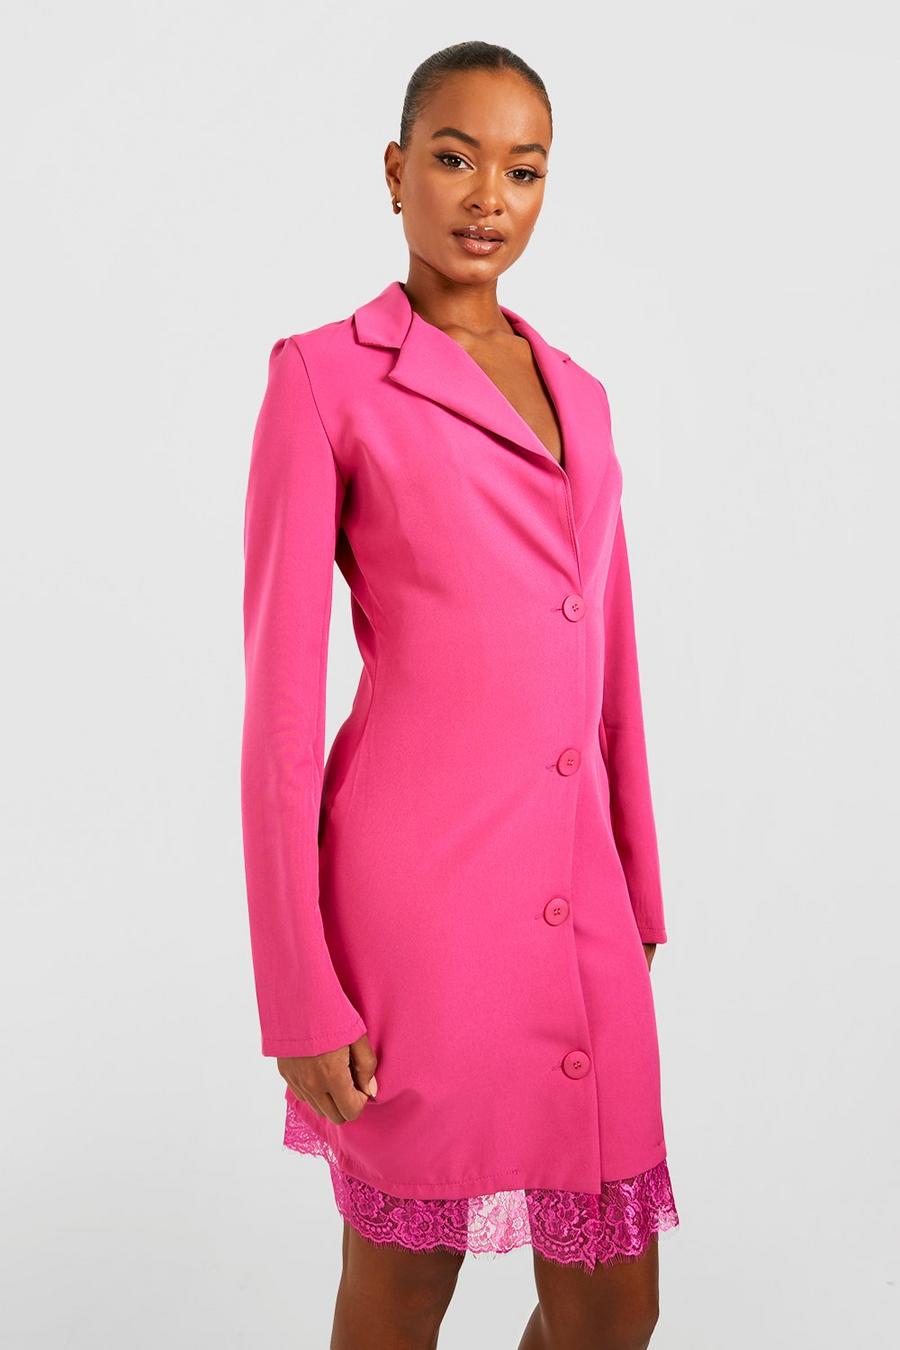 Hot pink Tall Lace Trim Blazer Dress